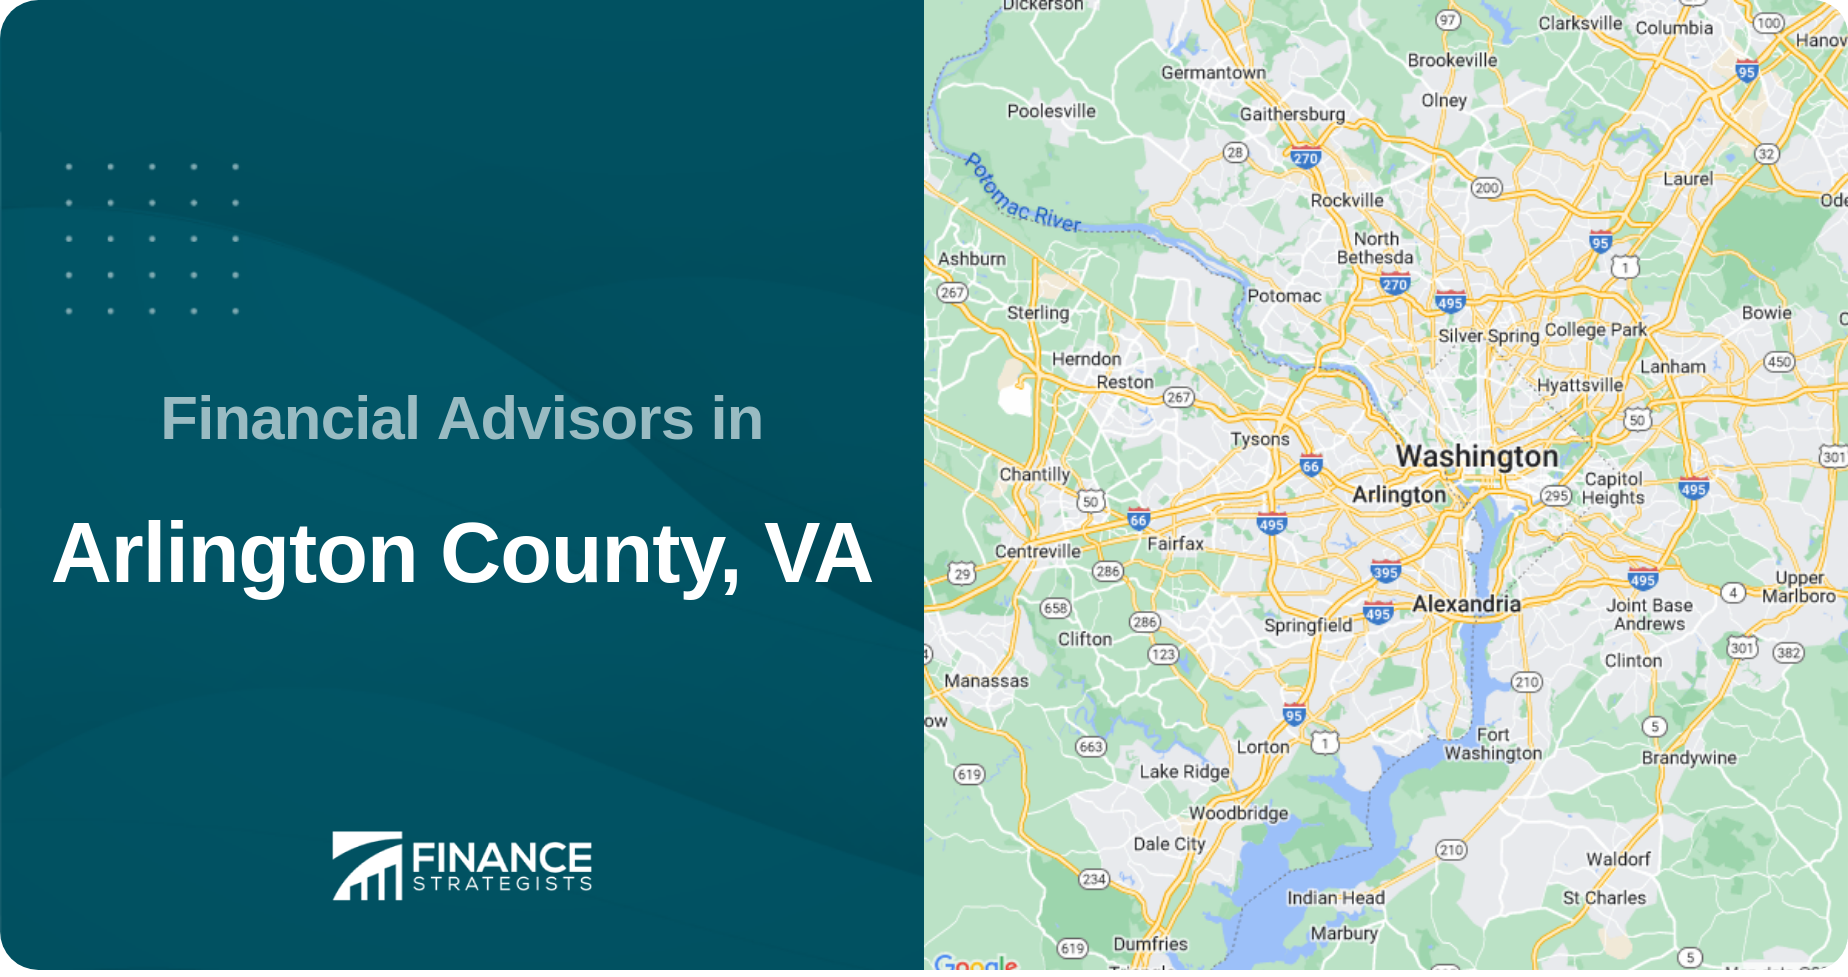 Financial Advisors in Arlington County, VA